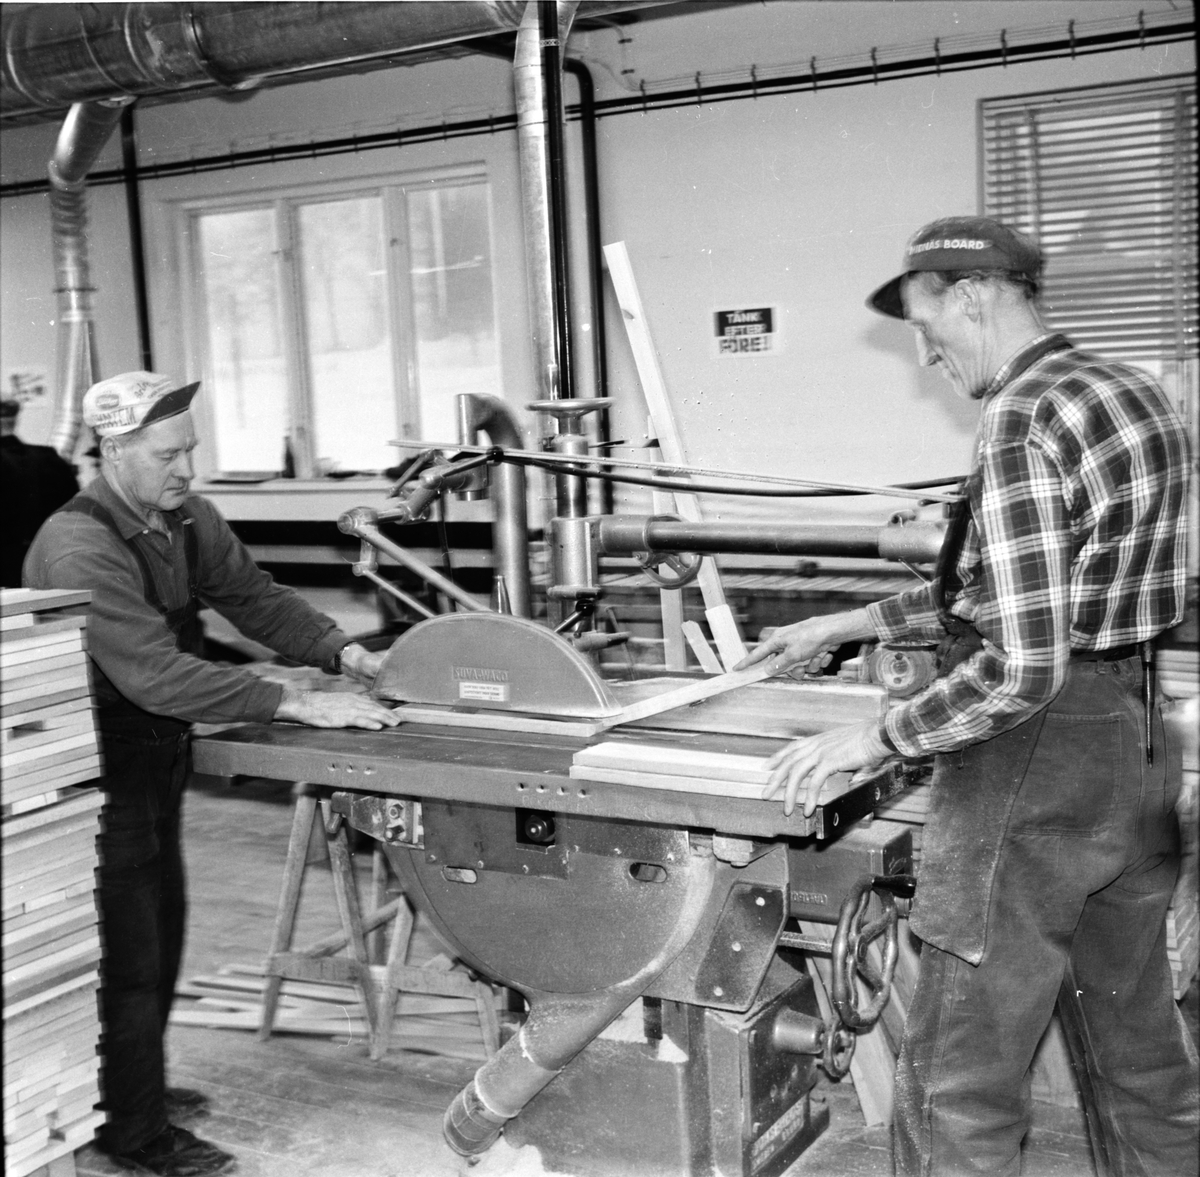 Arbrå,
Arbrå Träprodukter,
Januari 1969
